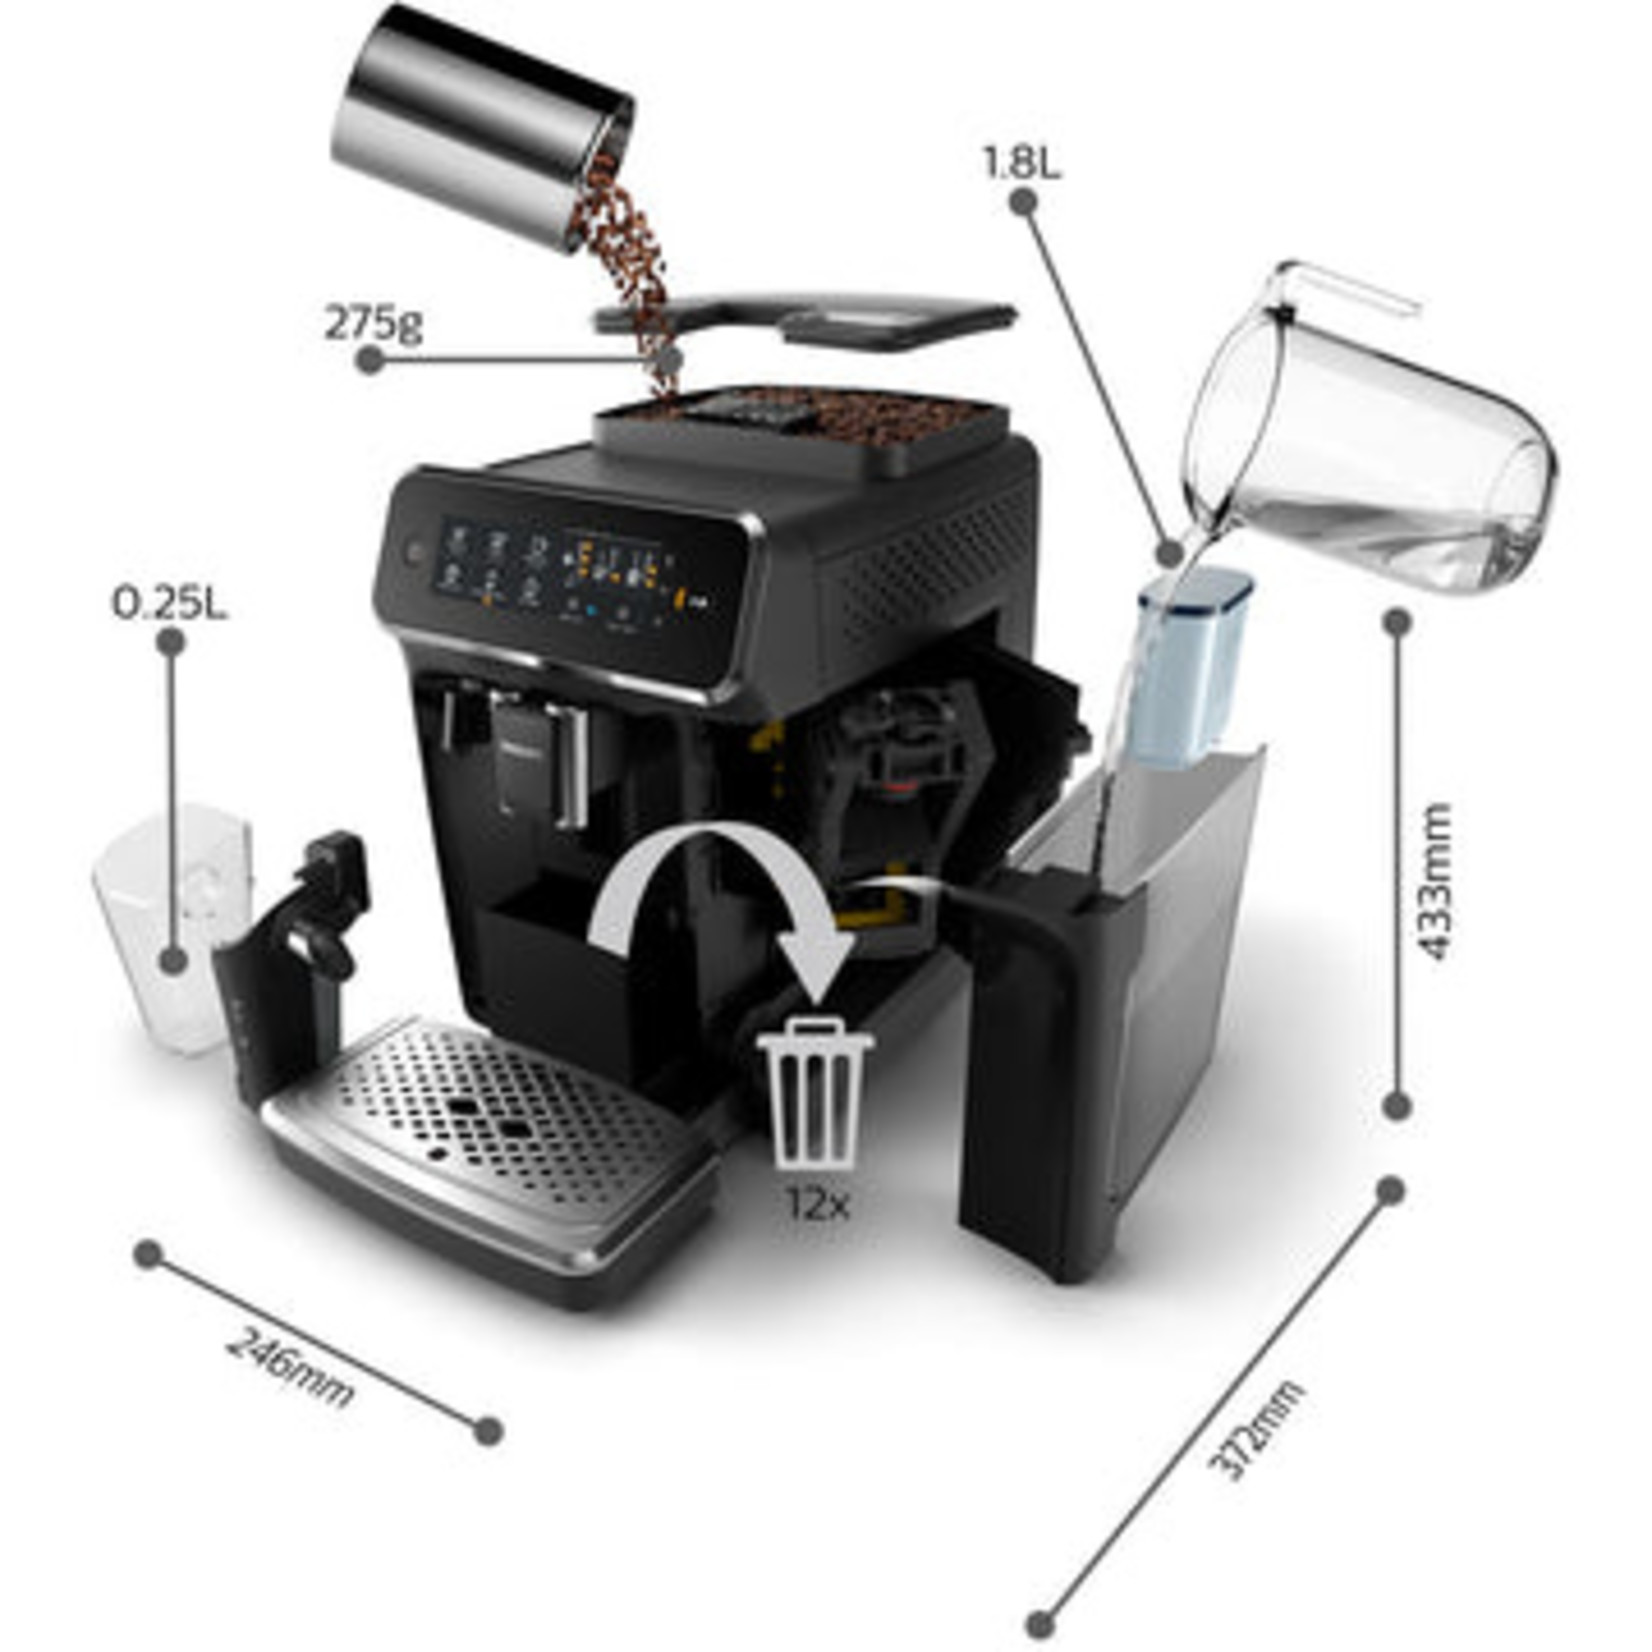 PHILIPS Série 3200 Espresso automatique Lattego (Démo de plancher)